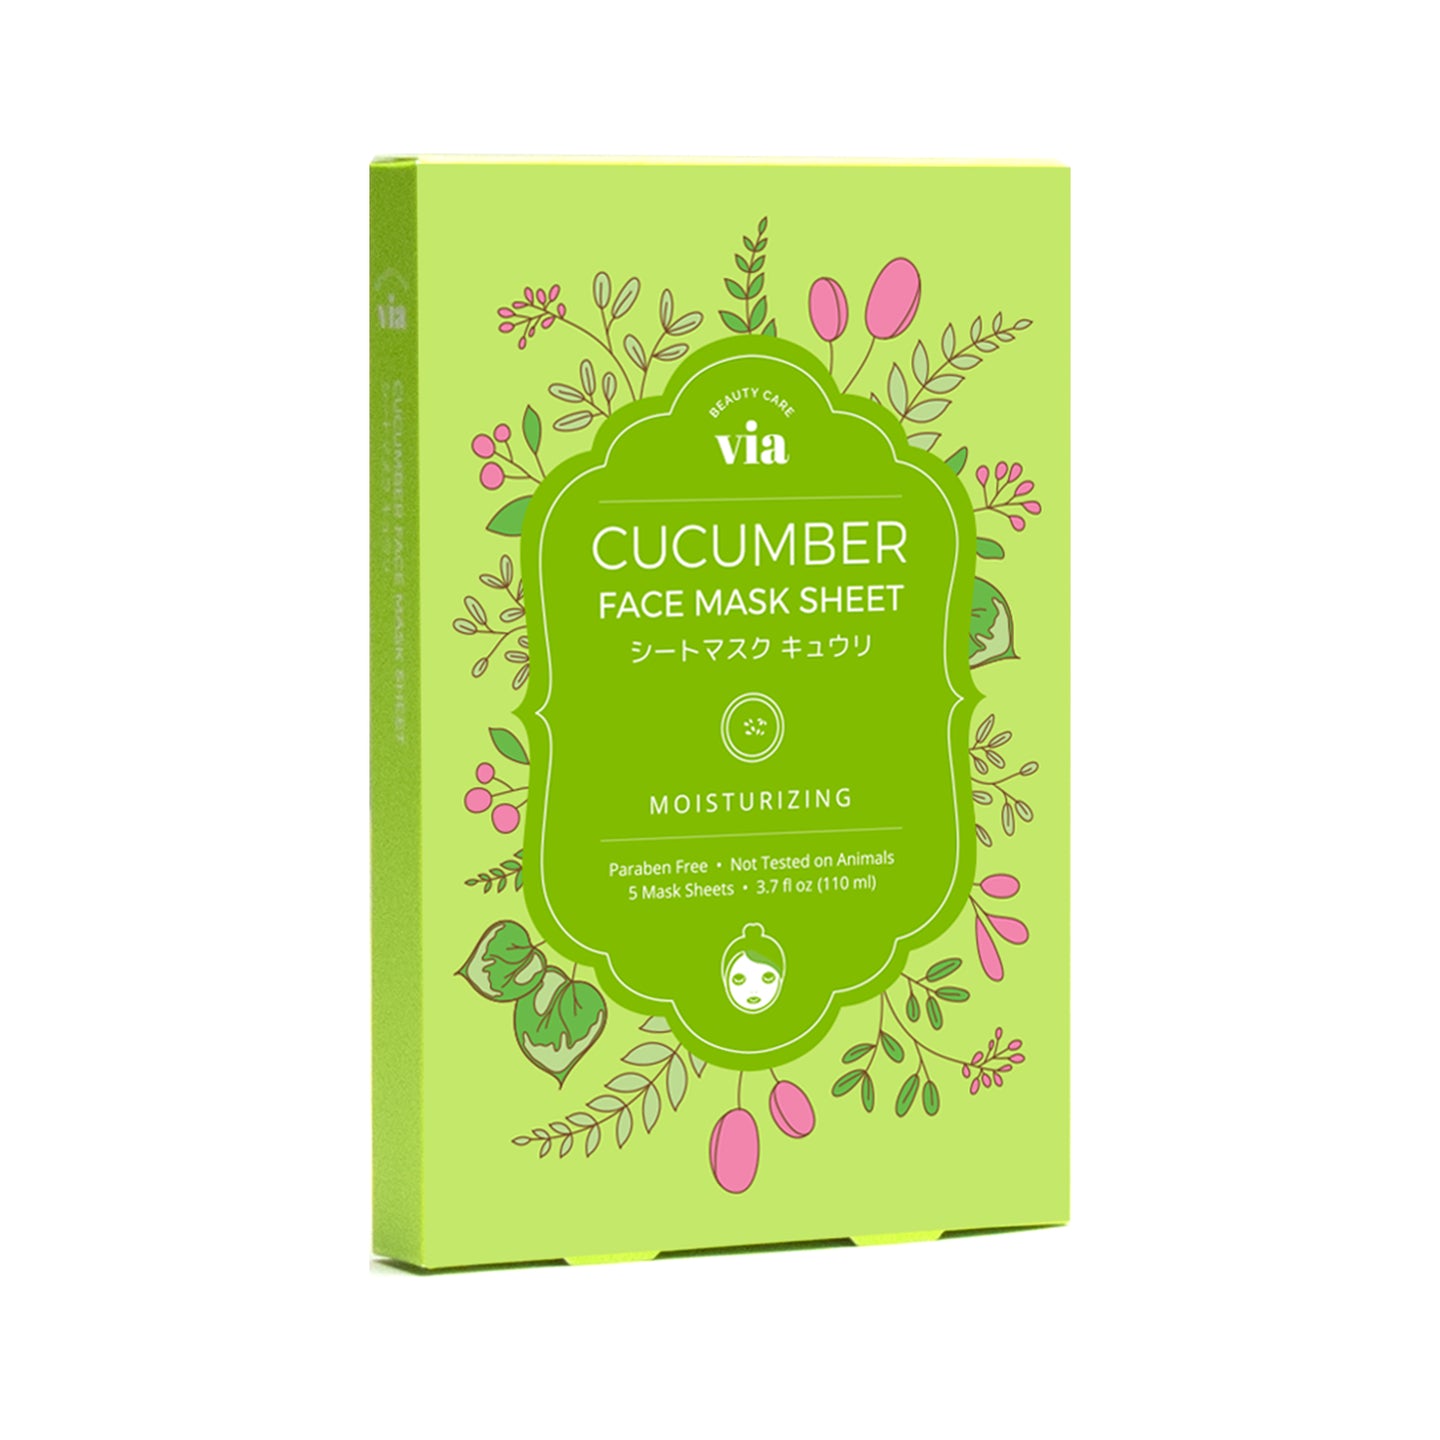 Cucumber Face Mask Sheet Box Set (5 Sheets) - Via Beauty Care